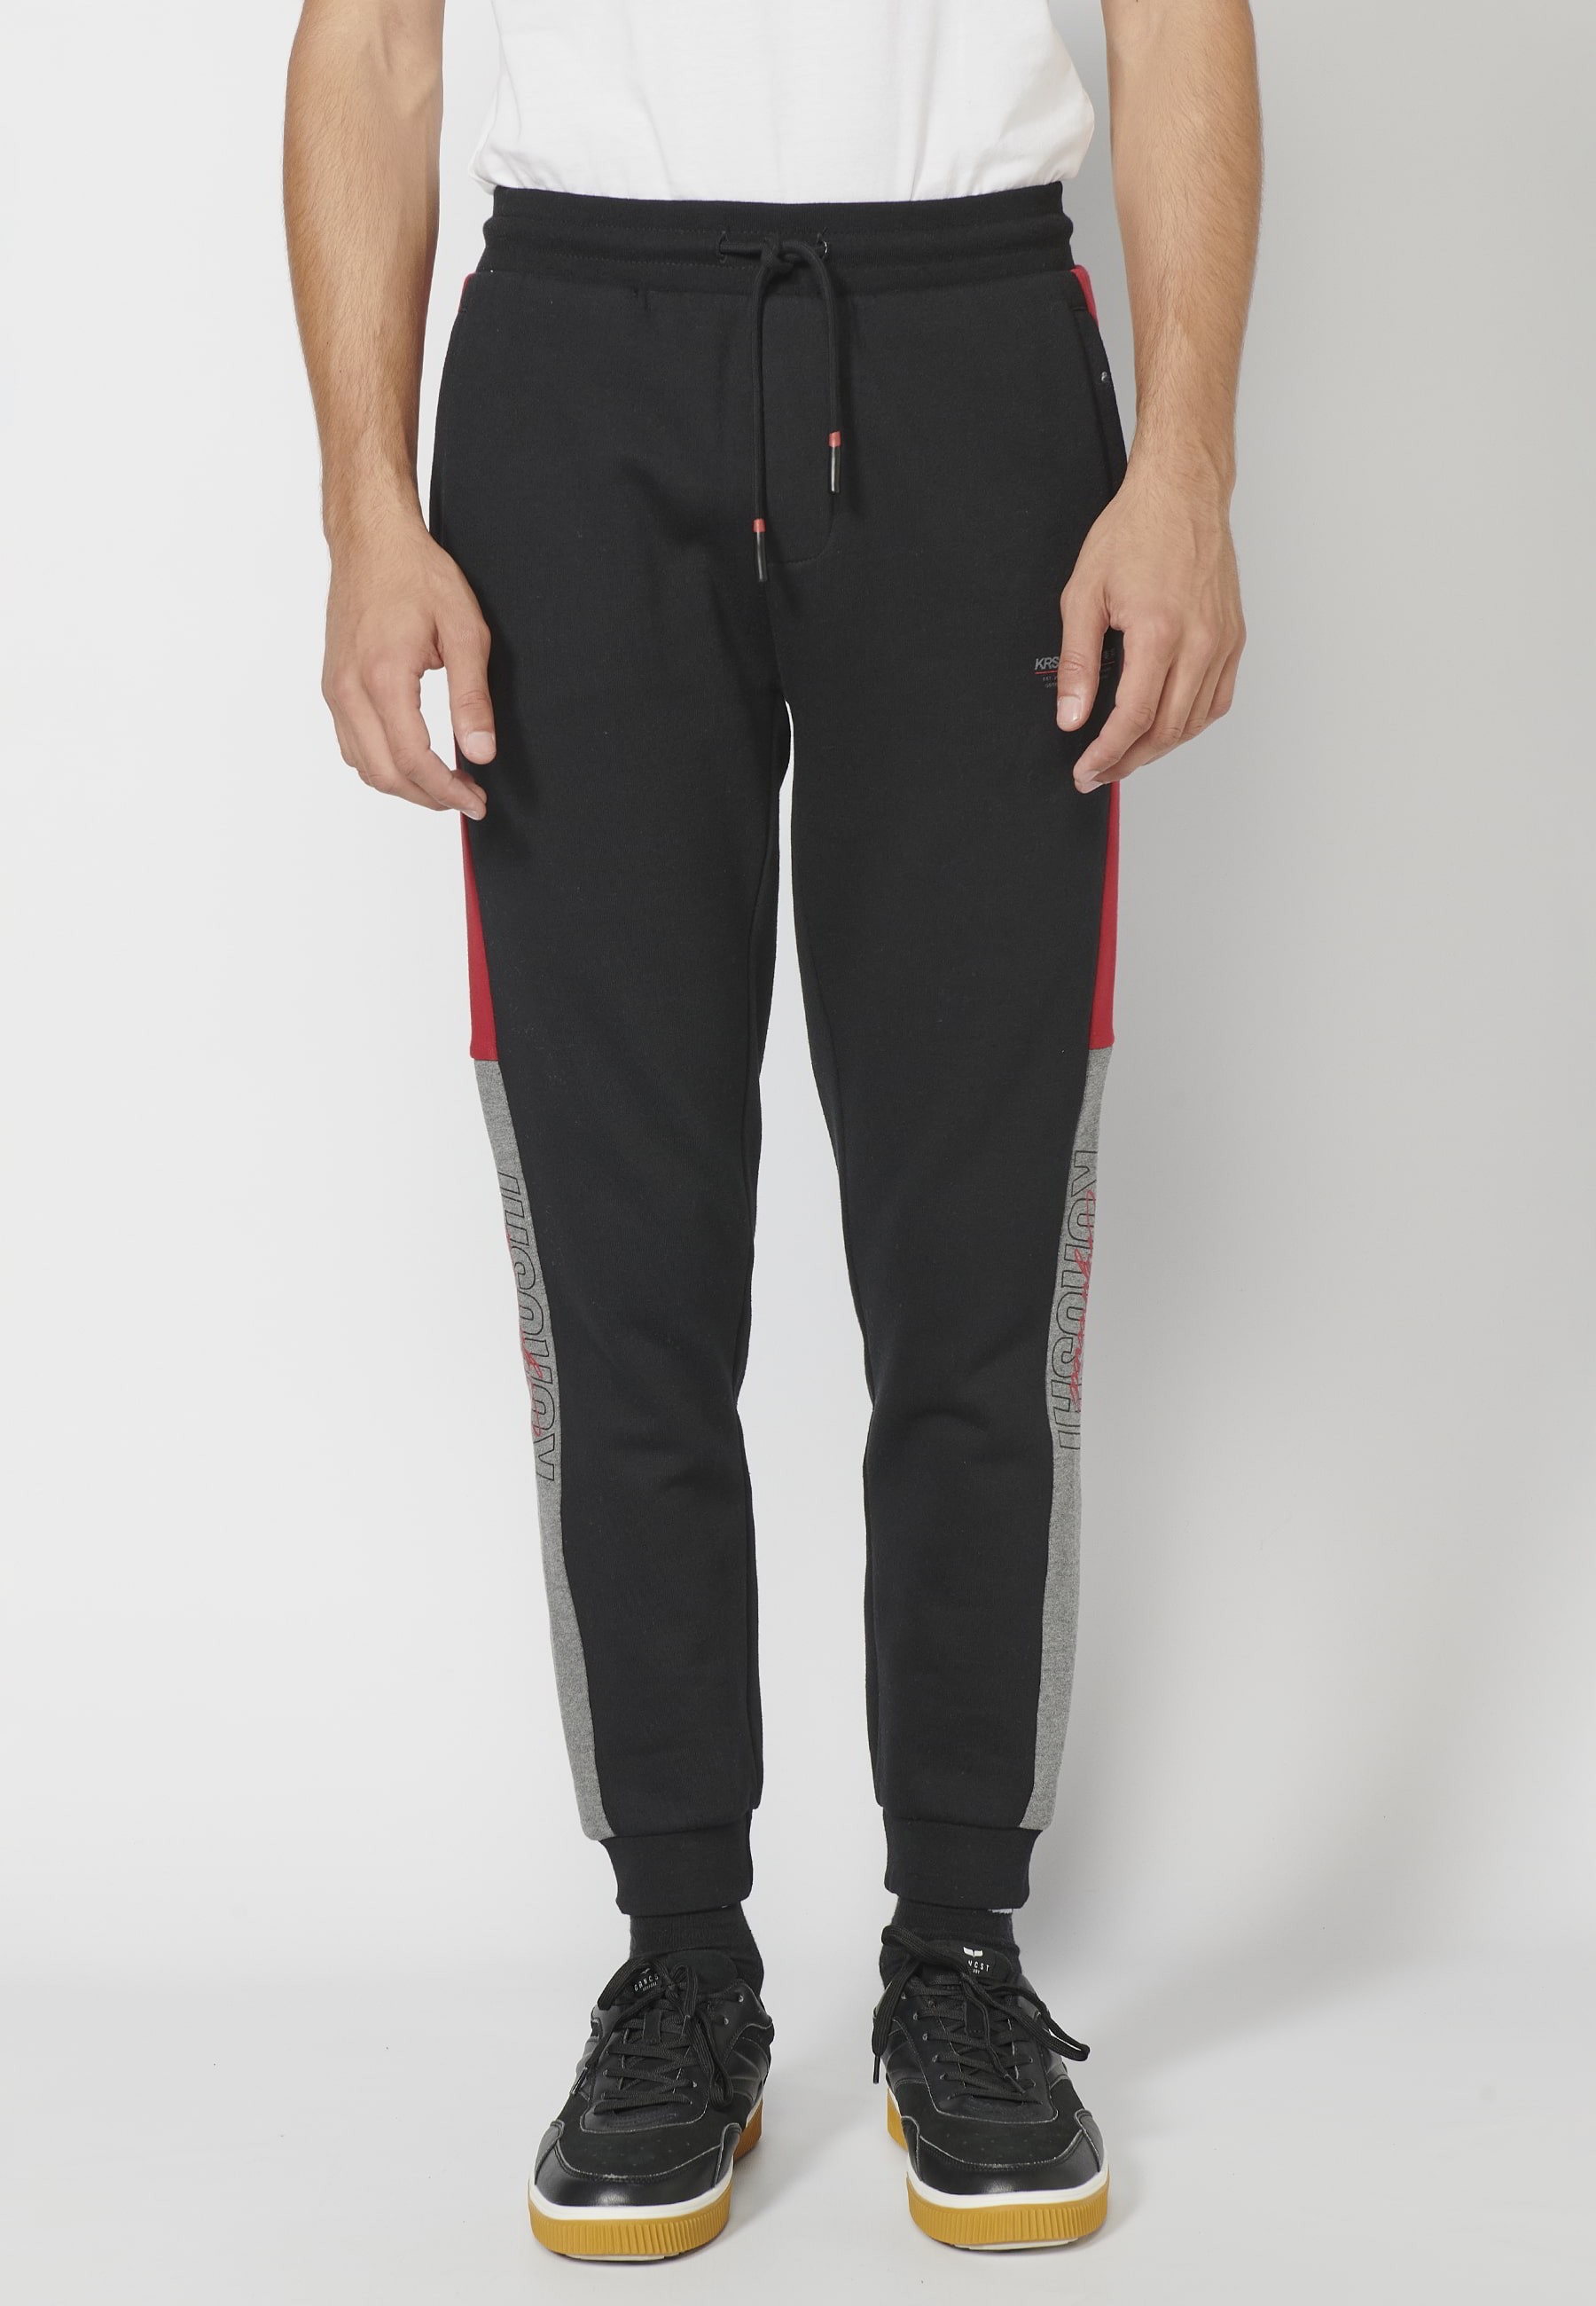 Pantalon de jogging long avec taille élastique réglable, détail latéral,  couleur noir pour Homme